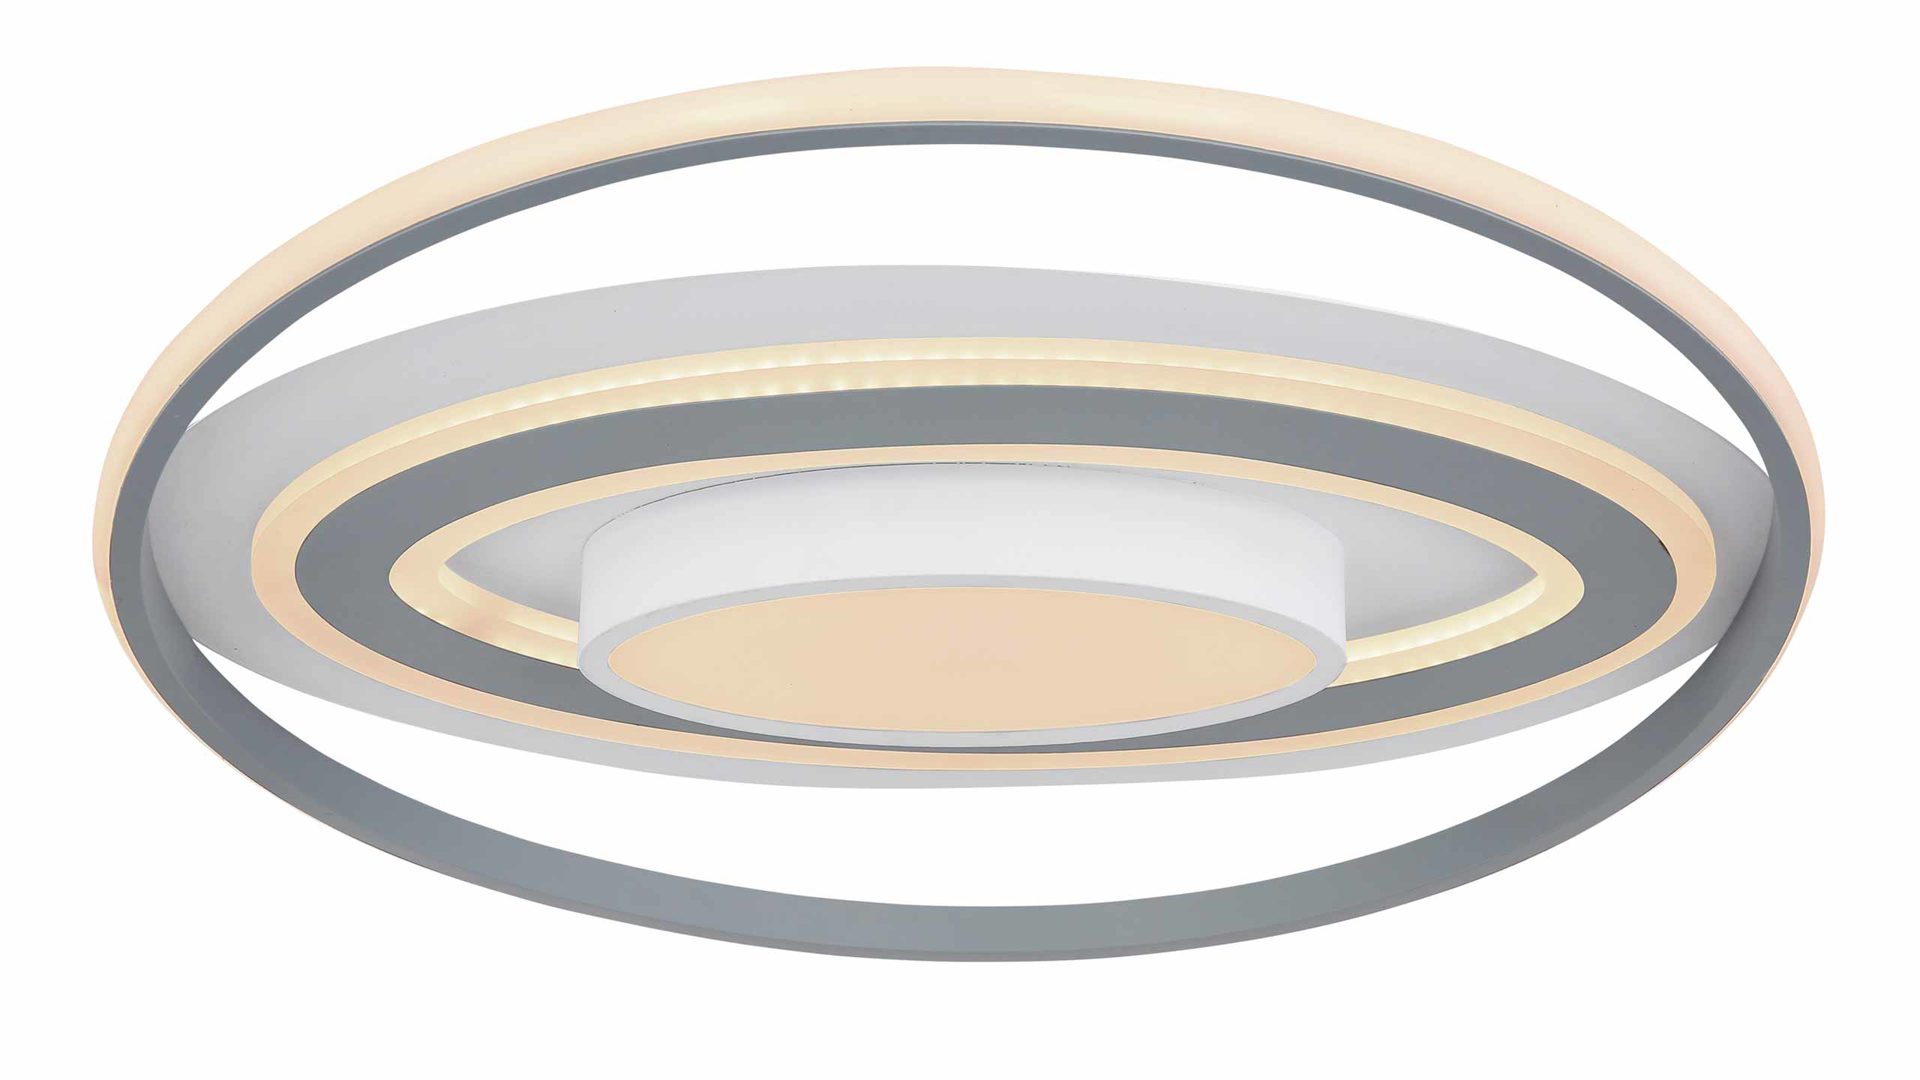 Deckenleuchte Globo lighting aus Kunststoff Aluminium in Hellgrau Weiß GLOBO Deckenleuchte LEOLA Deckenlampe rund ca. 57 cm, Aluminium weiss, Kunststoff opal und grau